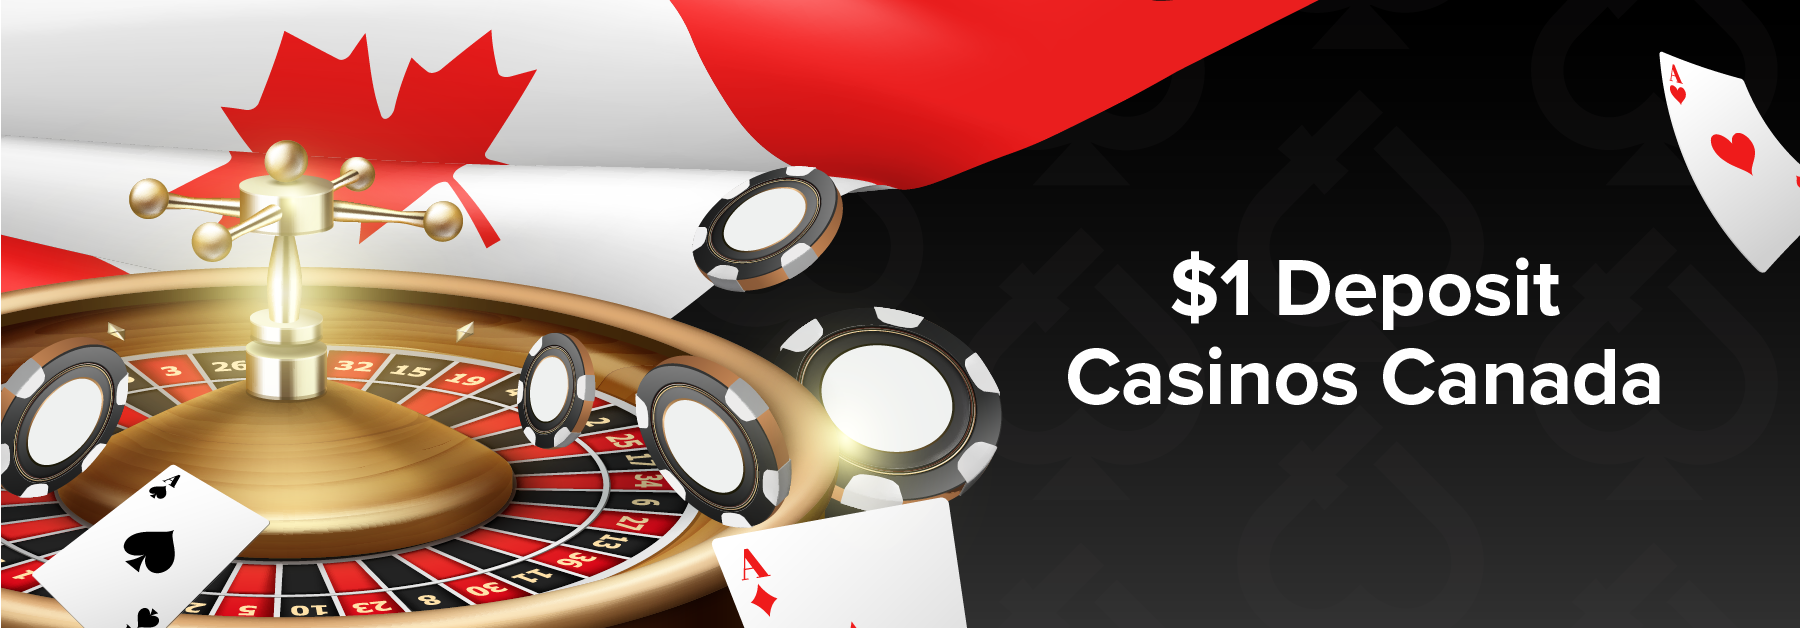 10 dollar minimum deposit casino